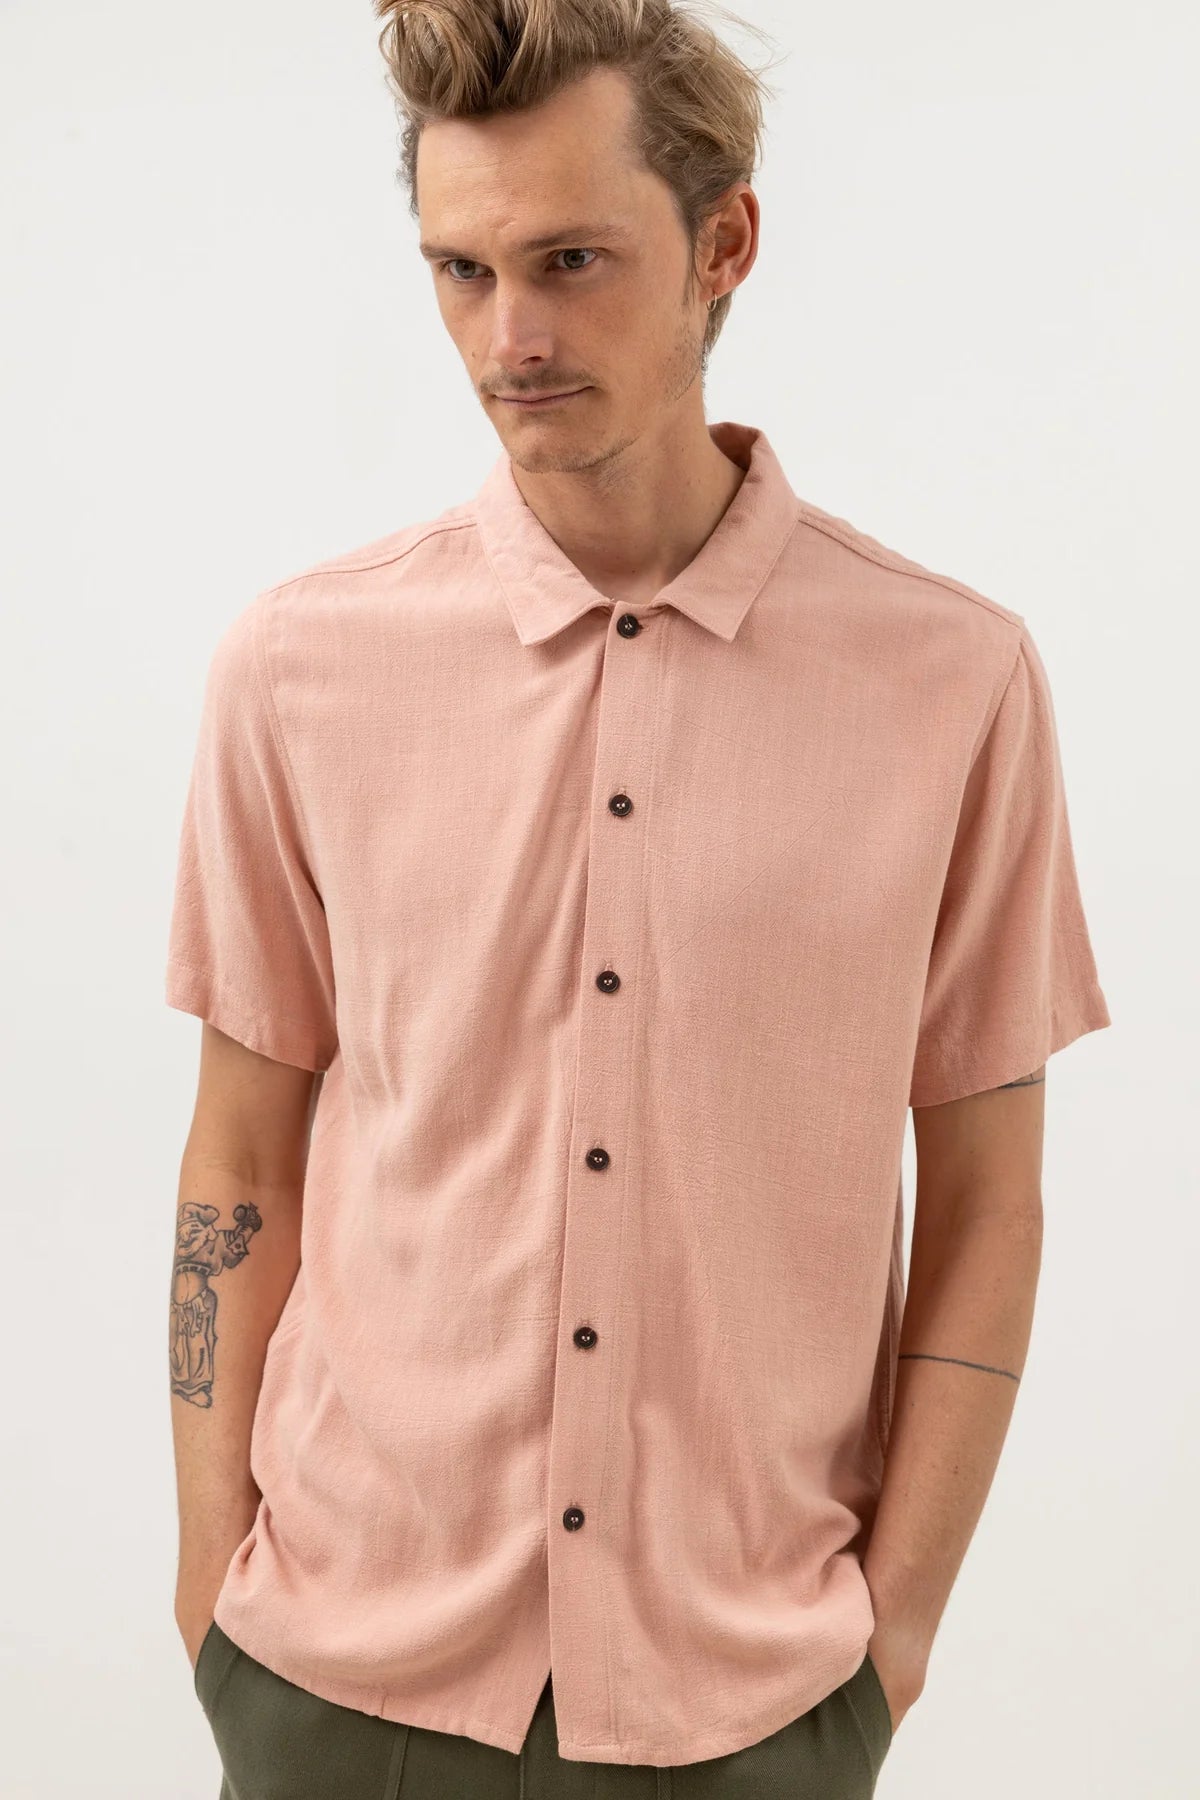 RHYTHM Textured Linen Short Sleeve Button Guava Men's Short Sleeve Button Up Shirts Rhythm 